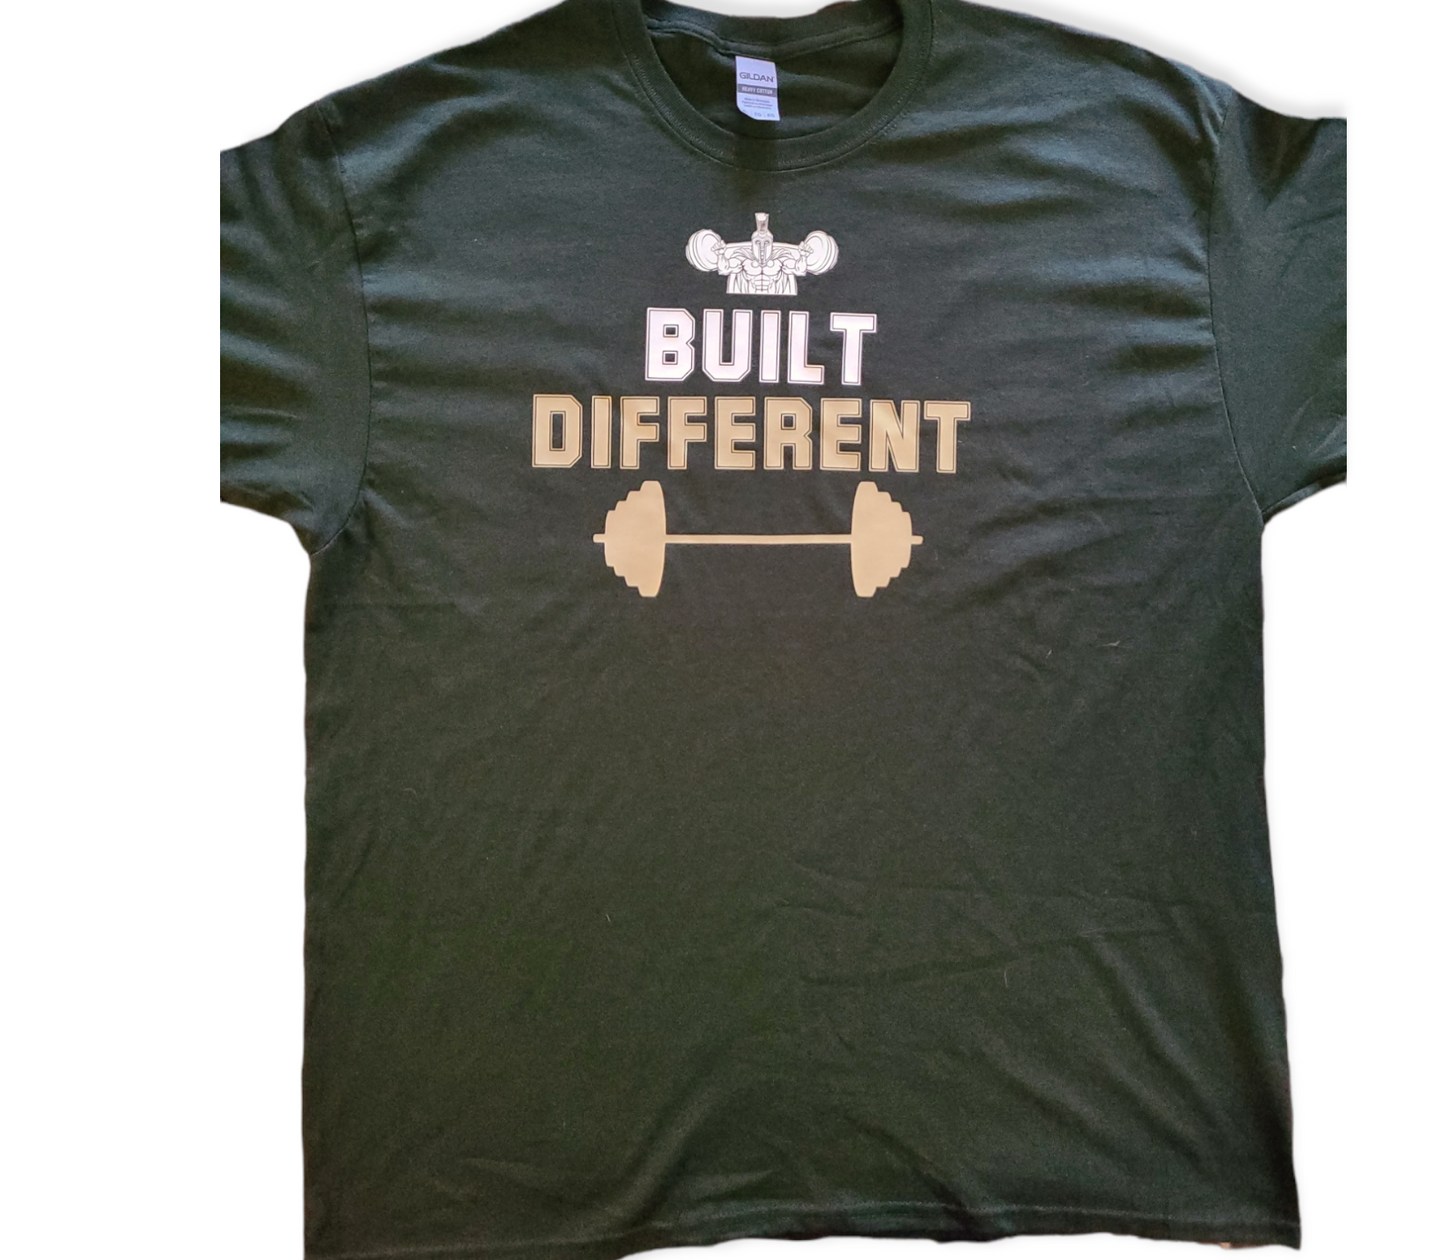 "Build Different" Gildan Tee